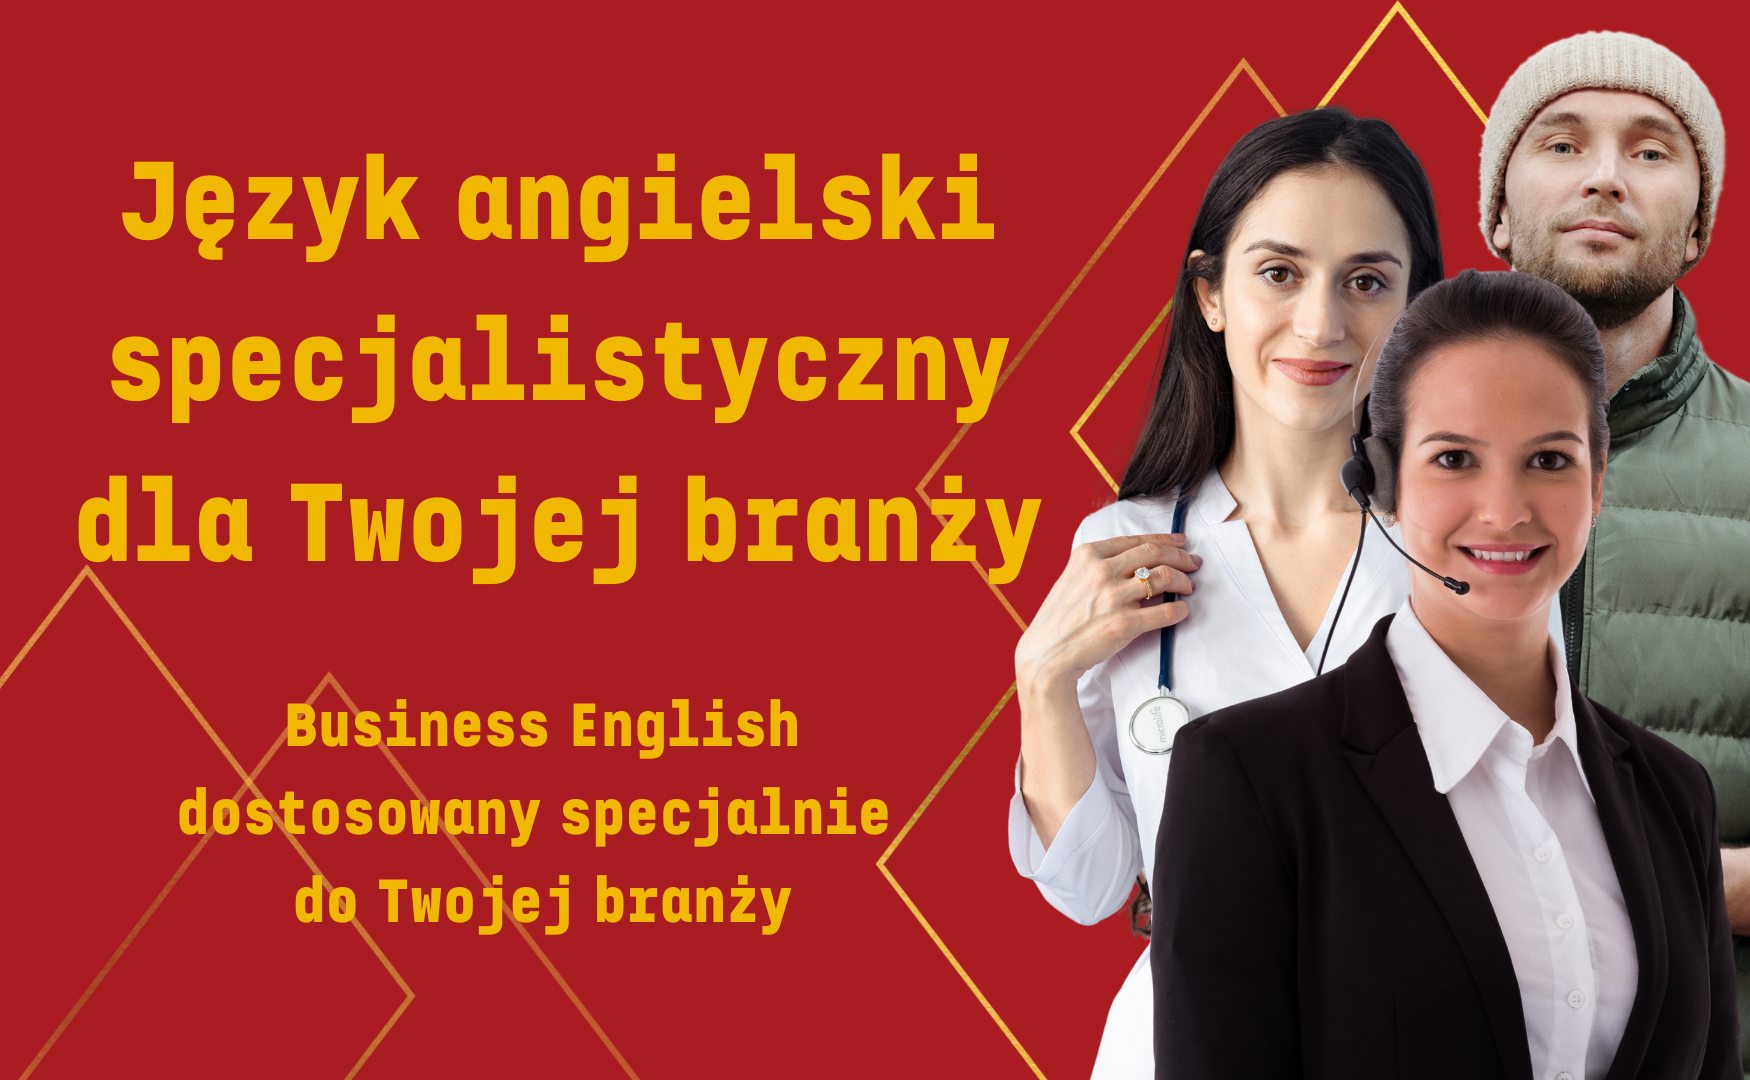 Kursy języka angielskiego w pracy (Kursy języka angielskiego specjalistycznego) - kursy i nauka specjalistycznego języka angielskiego dla różnych zawodów online